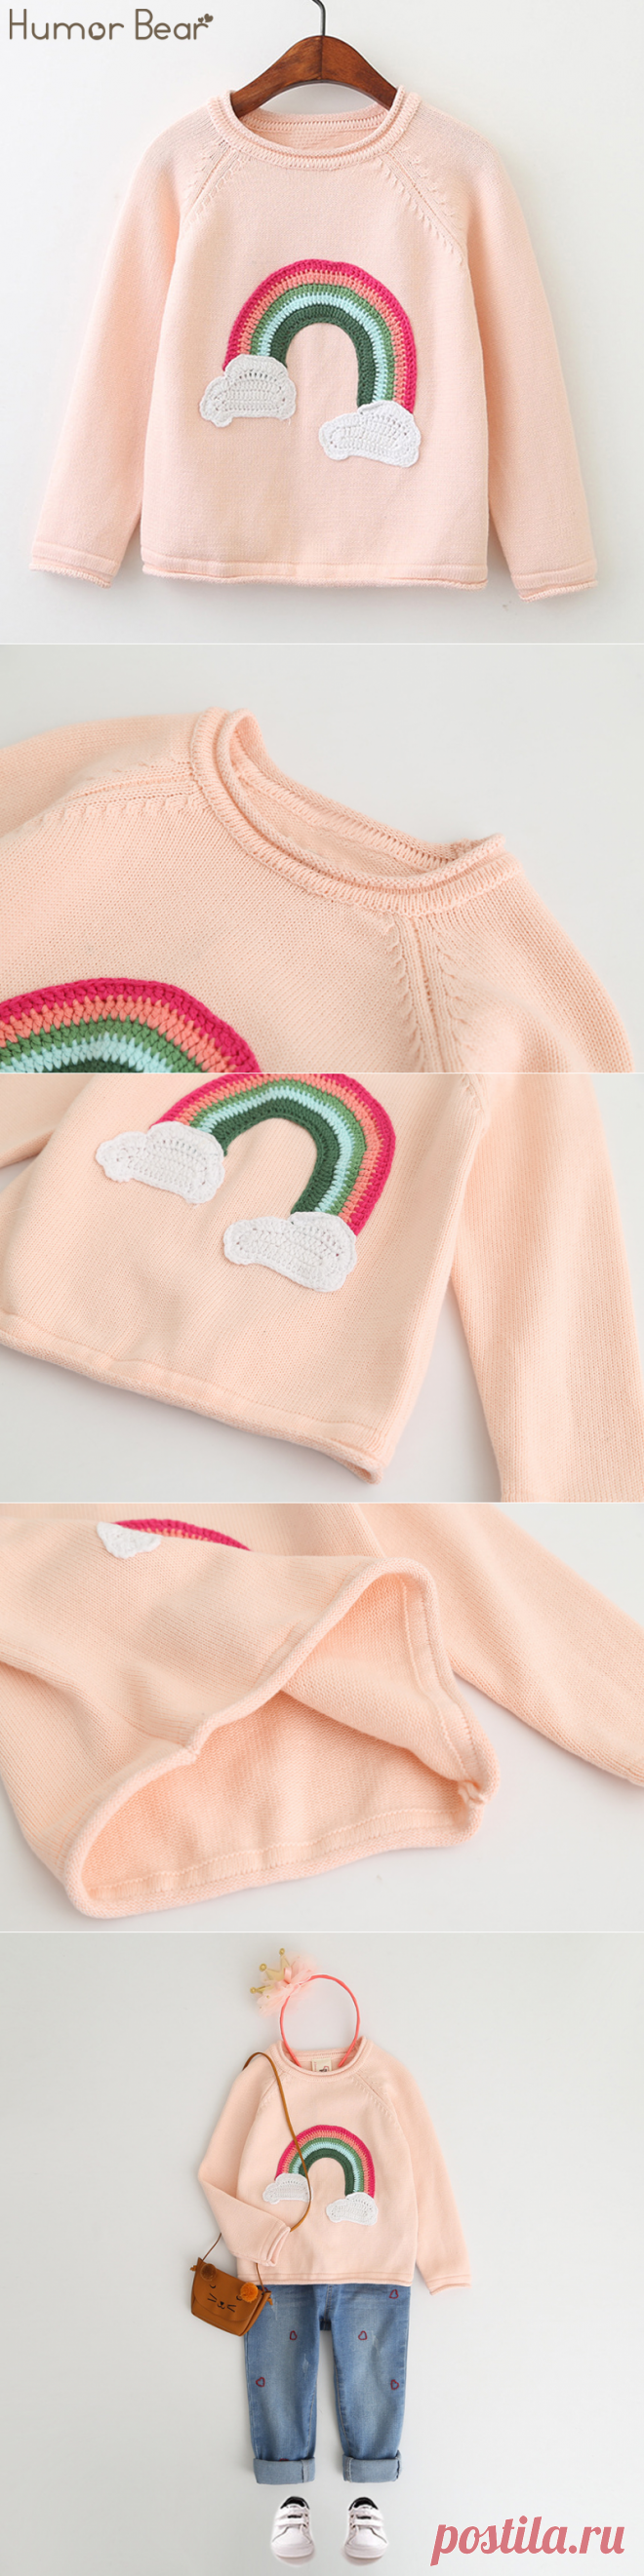 Humor Bear/свитер для маленьких девочек осень 2017 г. Вышивка Радуга Дизайн дети с расклешенными рукавами свитер детская одежда swceater купить на AliExpress